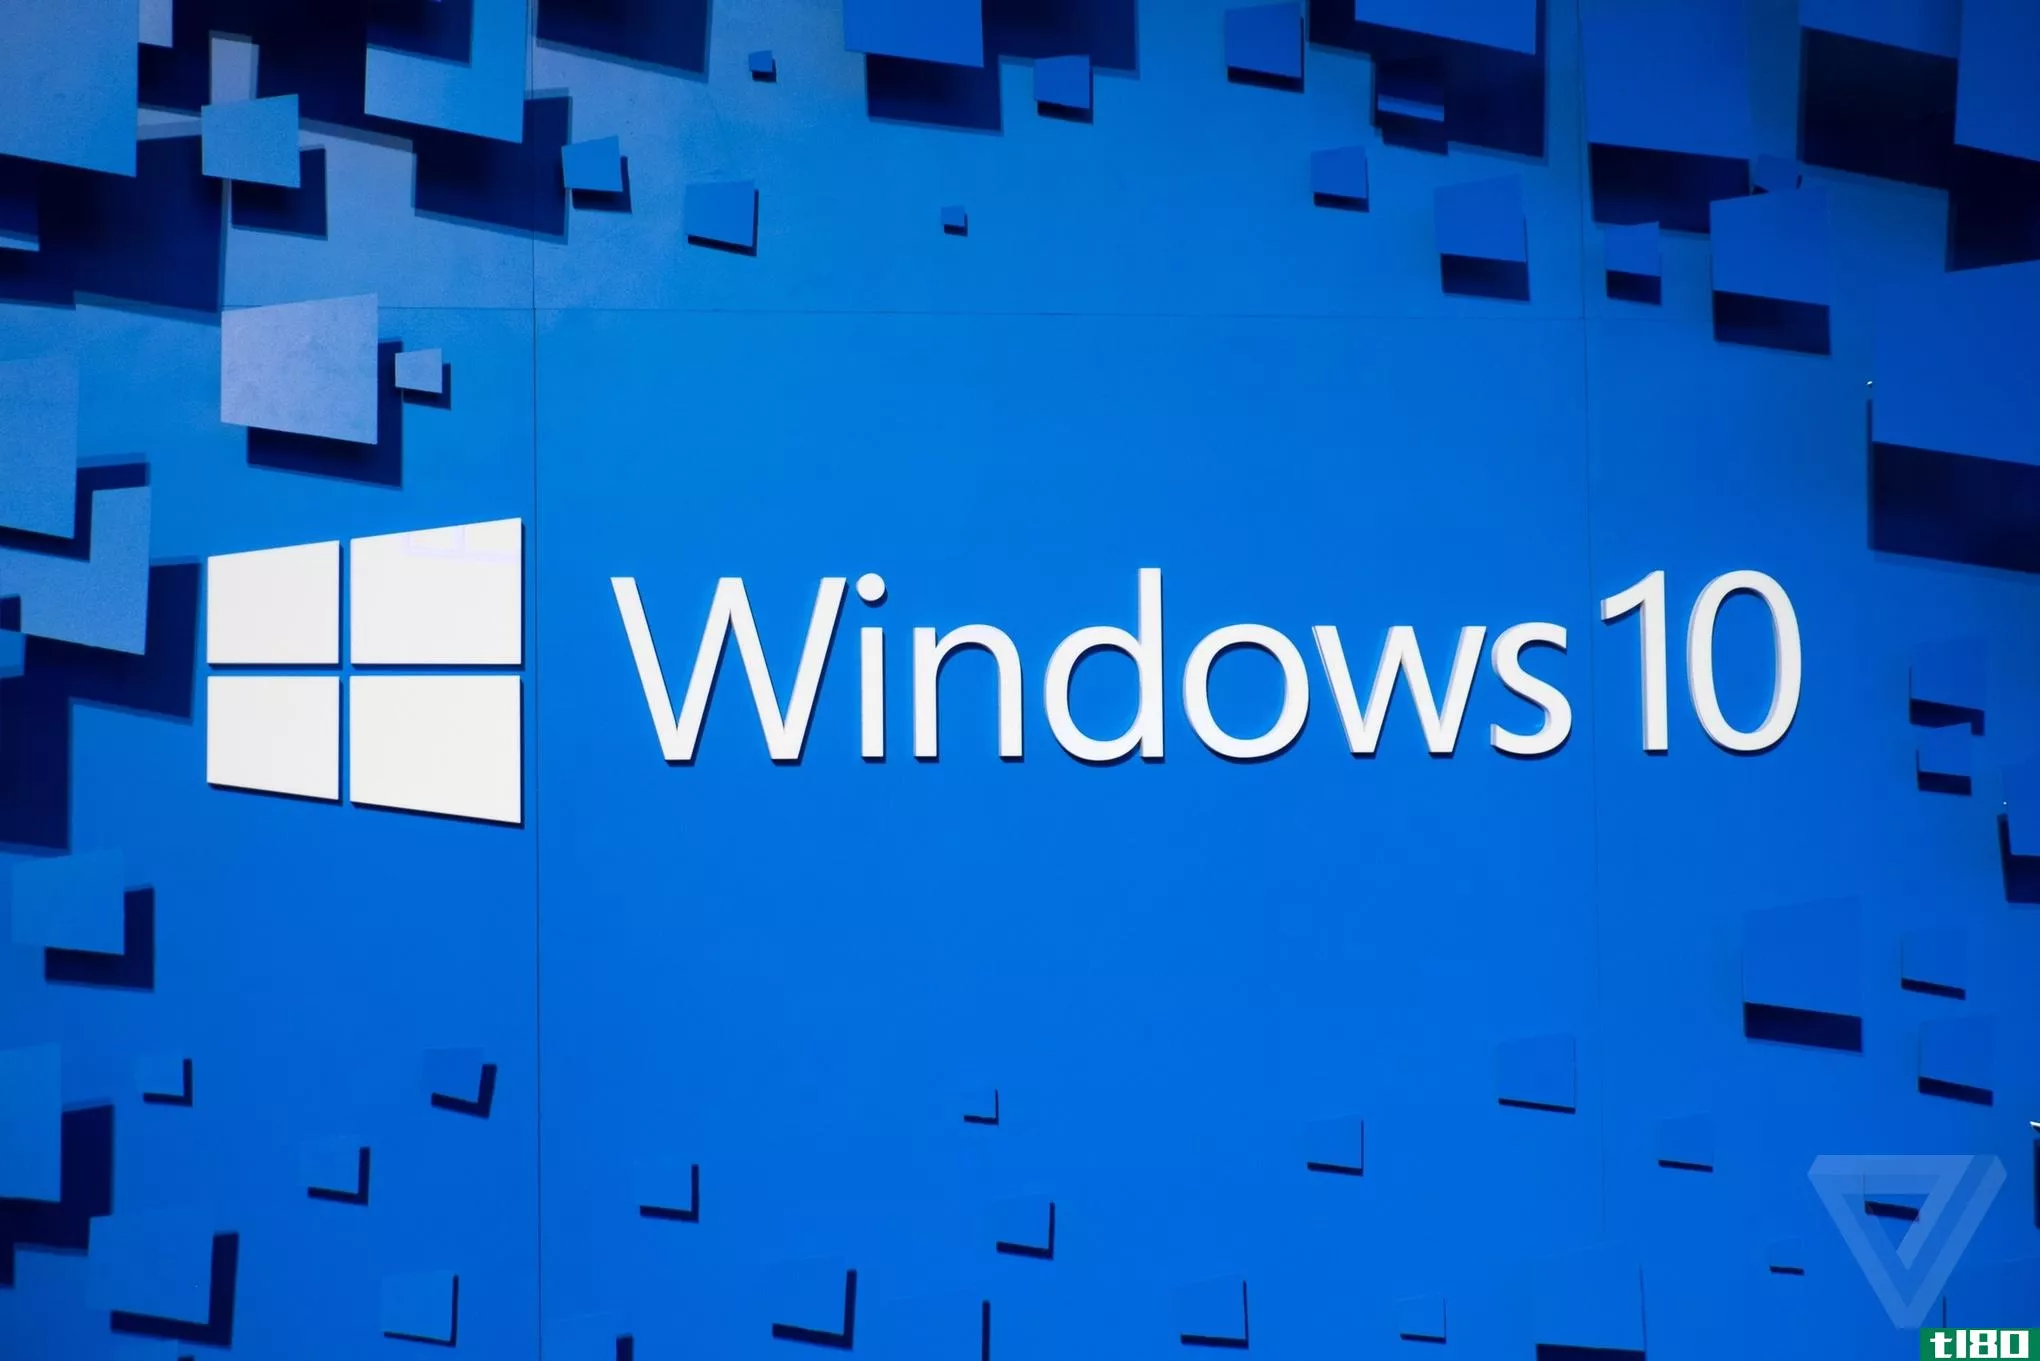 windows10目前在超过2亿台设备上运行